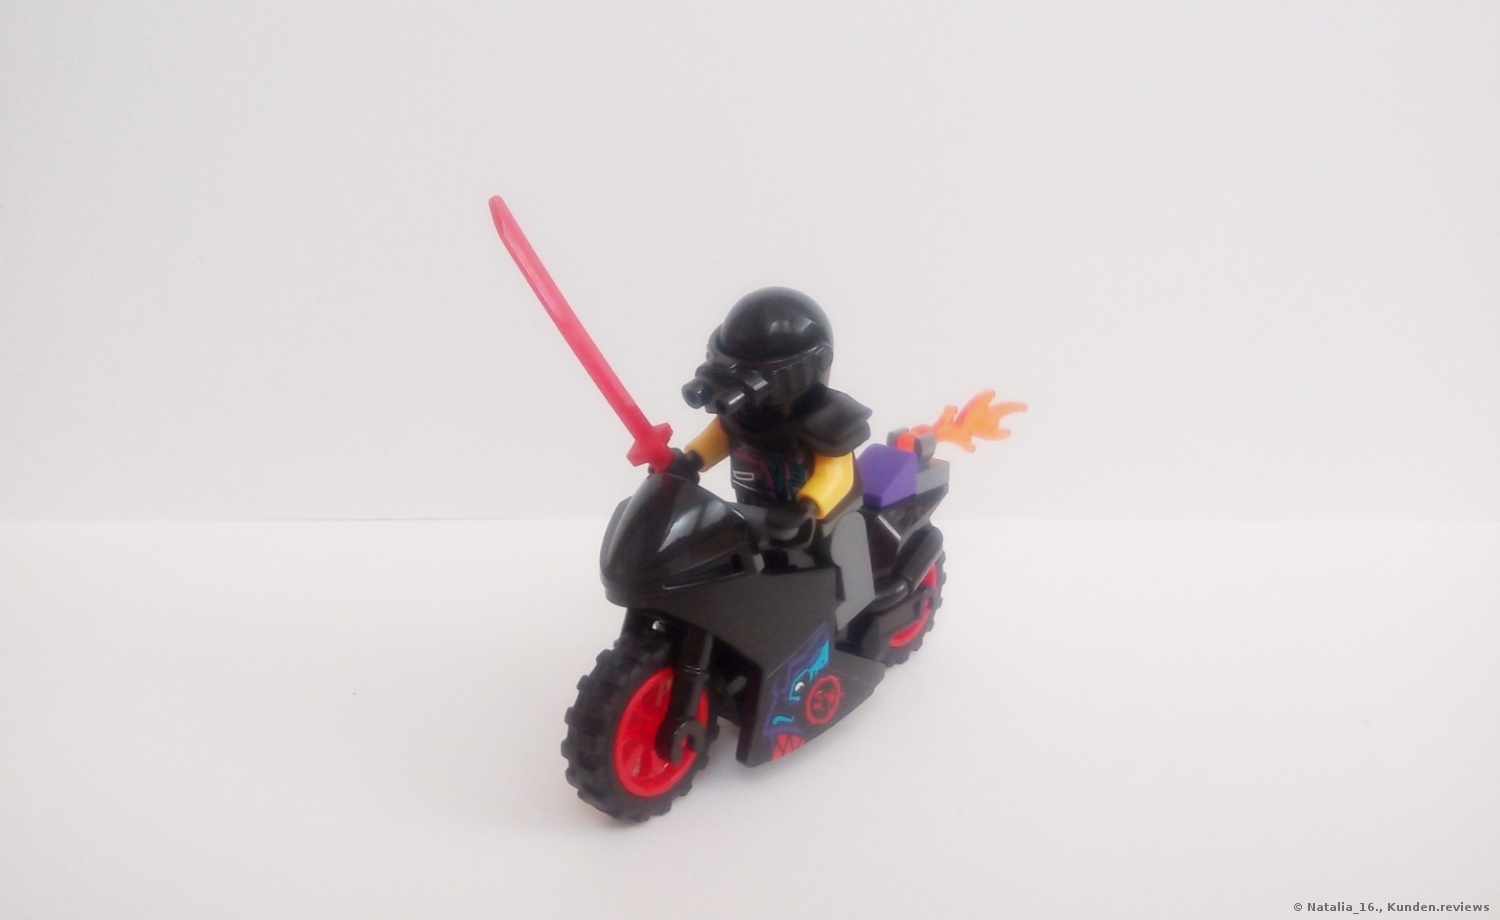 Lego Ninjago Katana V11 70638 